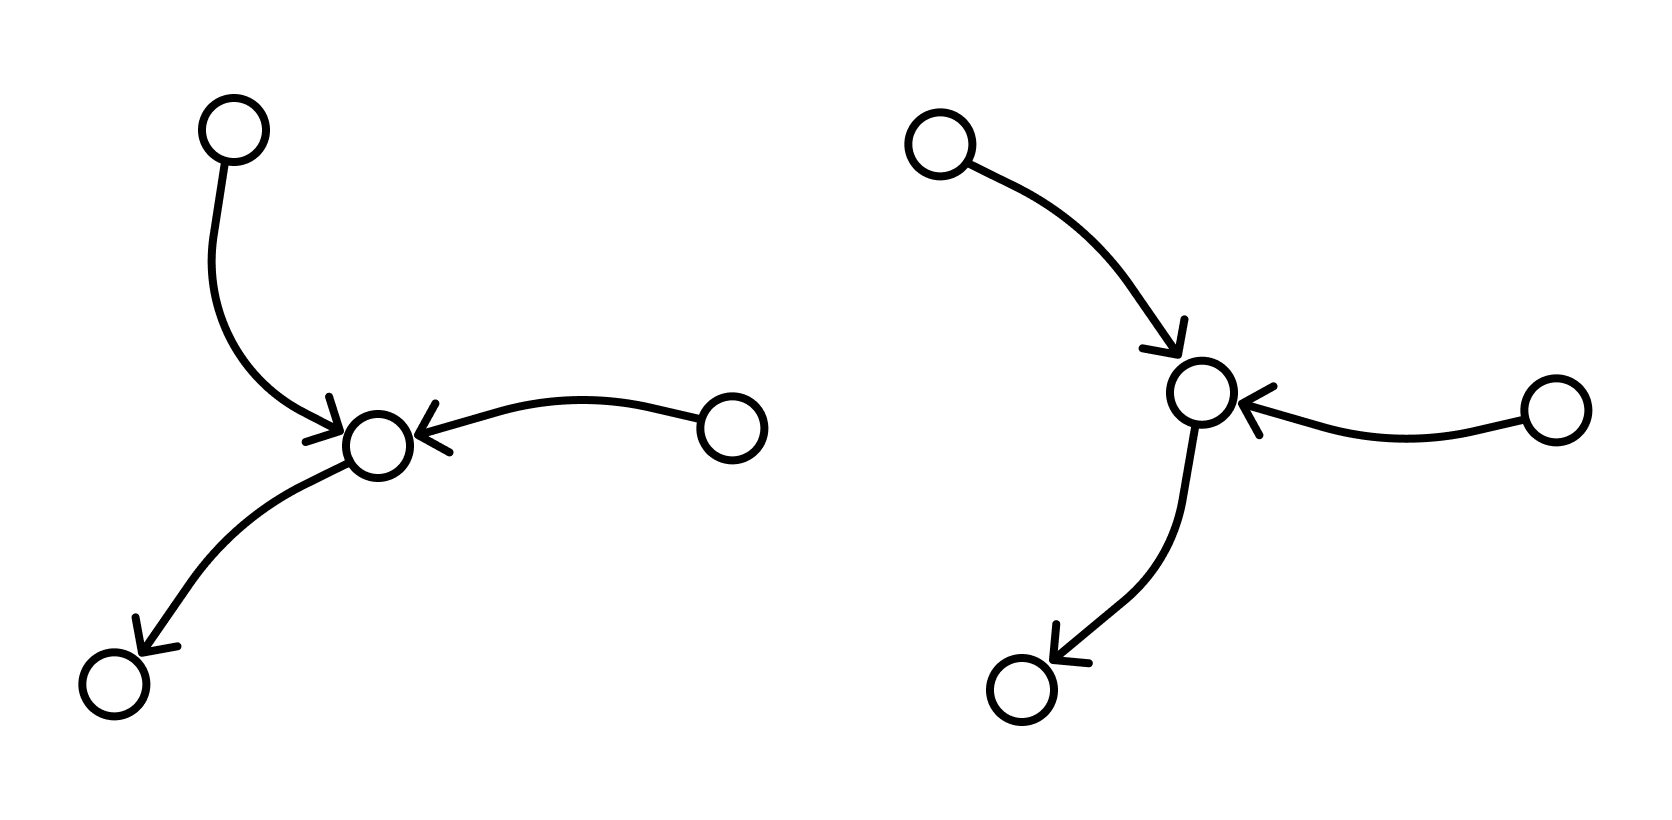 Цикл (теория графов). Графы цепи. Цепь графов. Путь в графе представление о связности графа